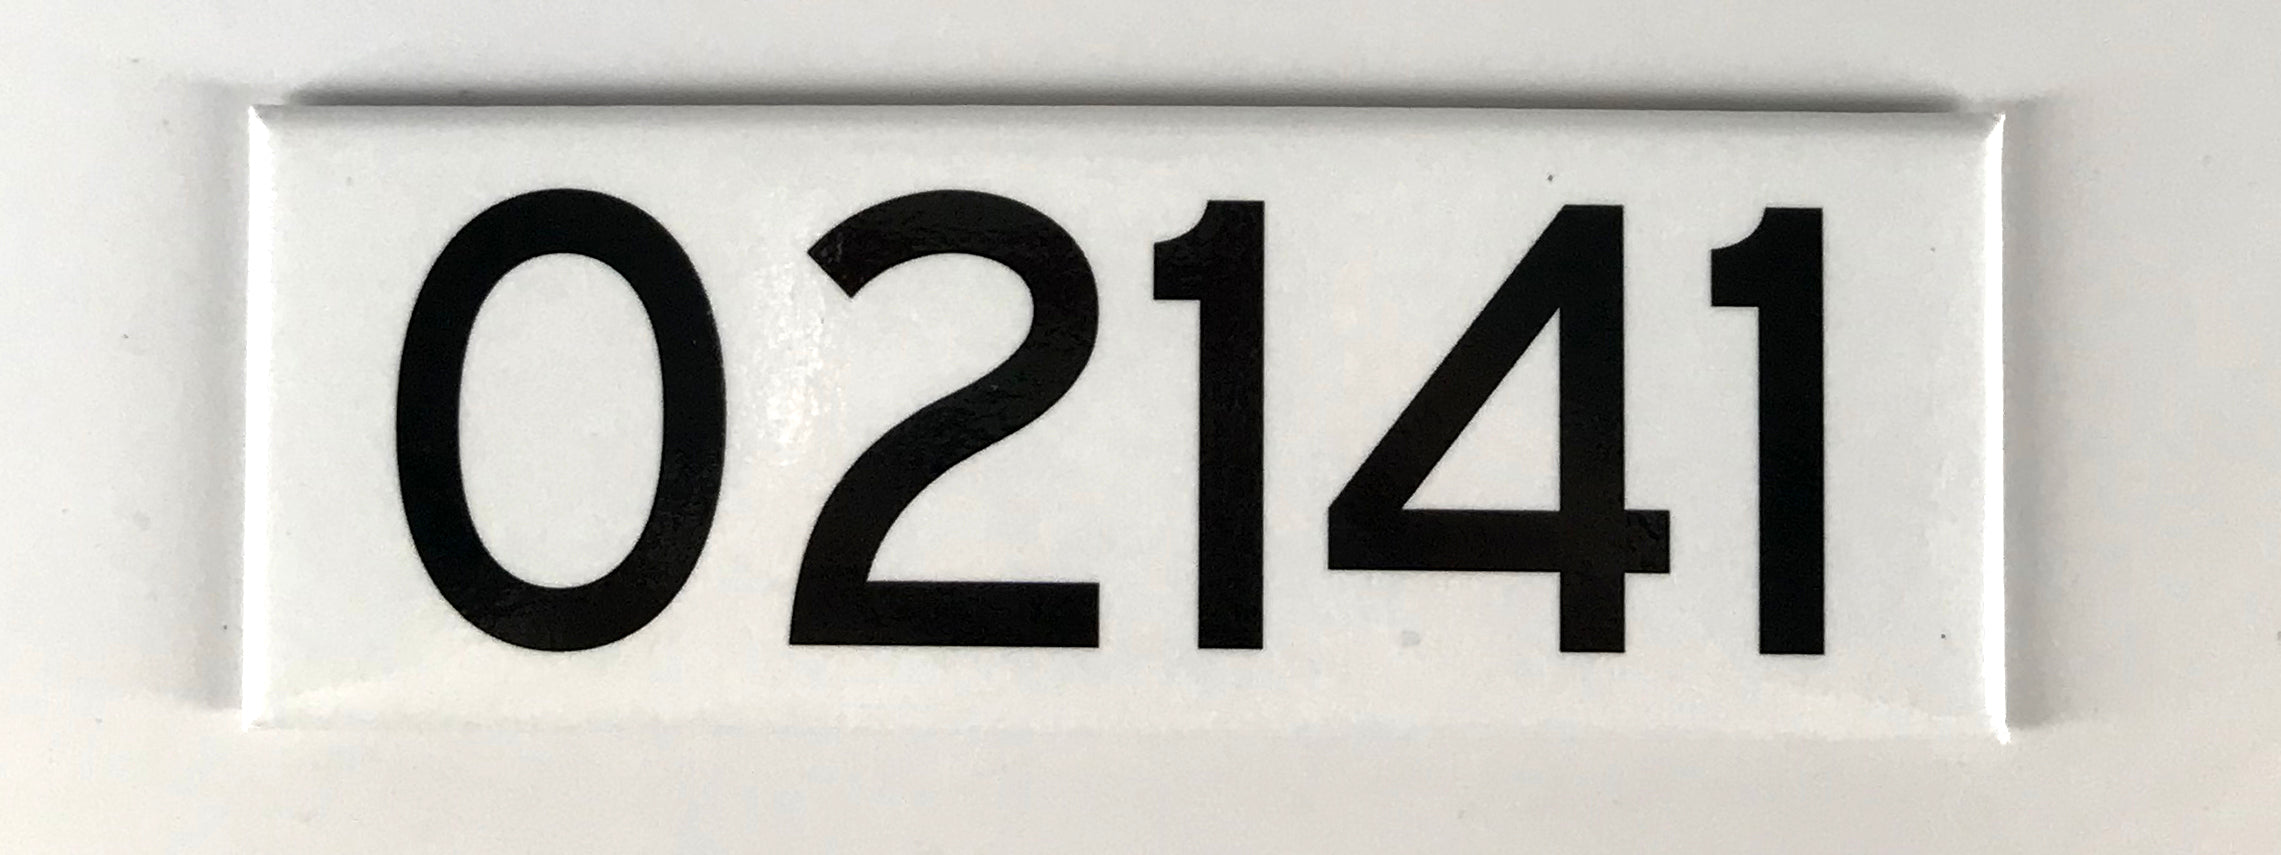 02141 (Cambridge, Massachusetts) ZIP Code Magnet